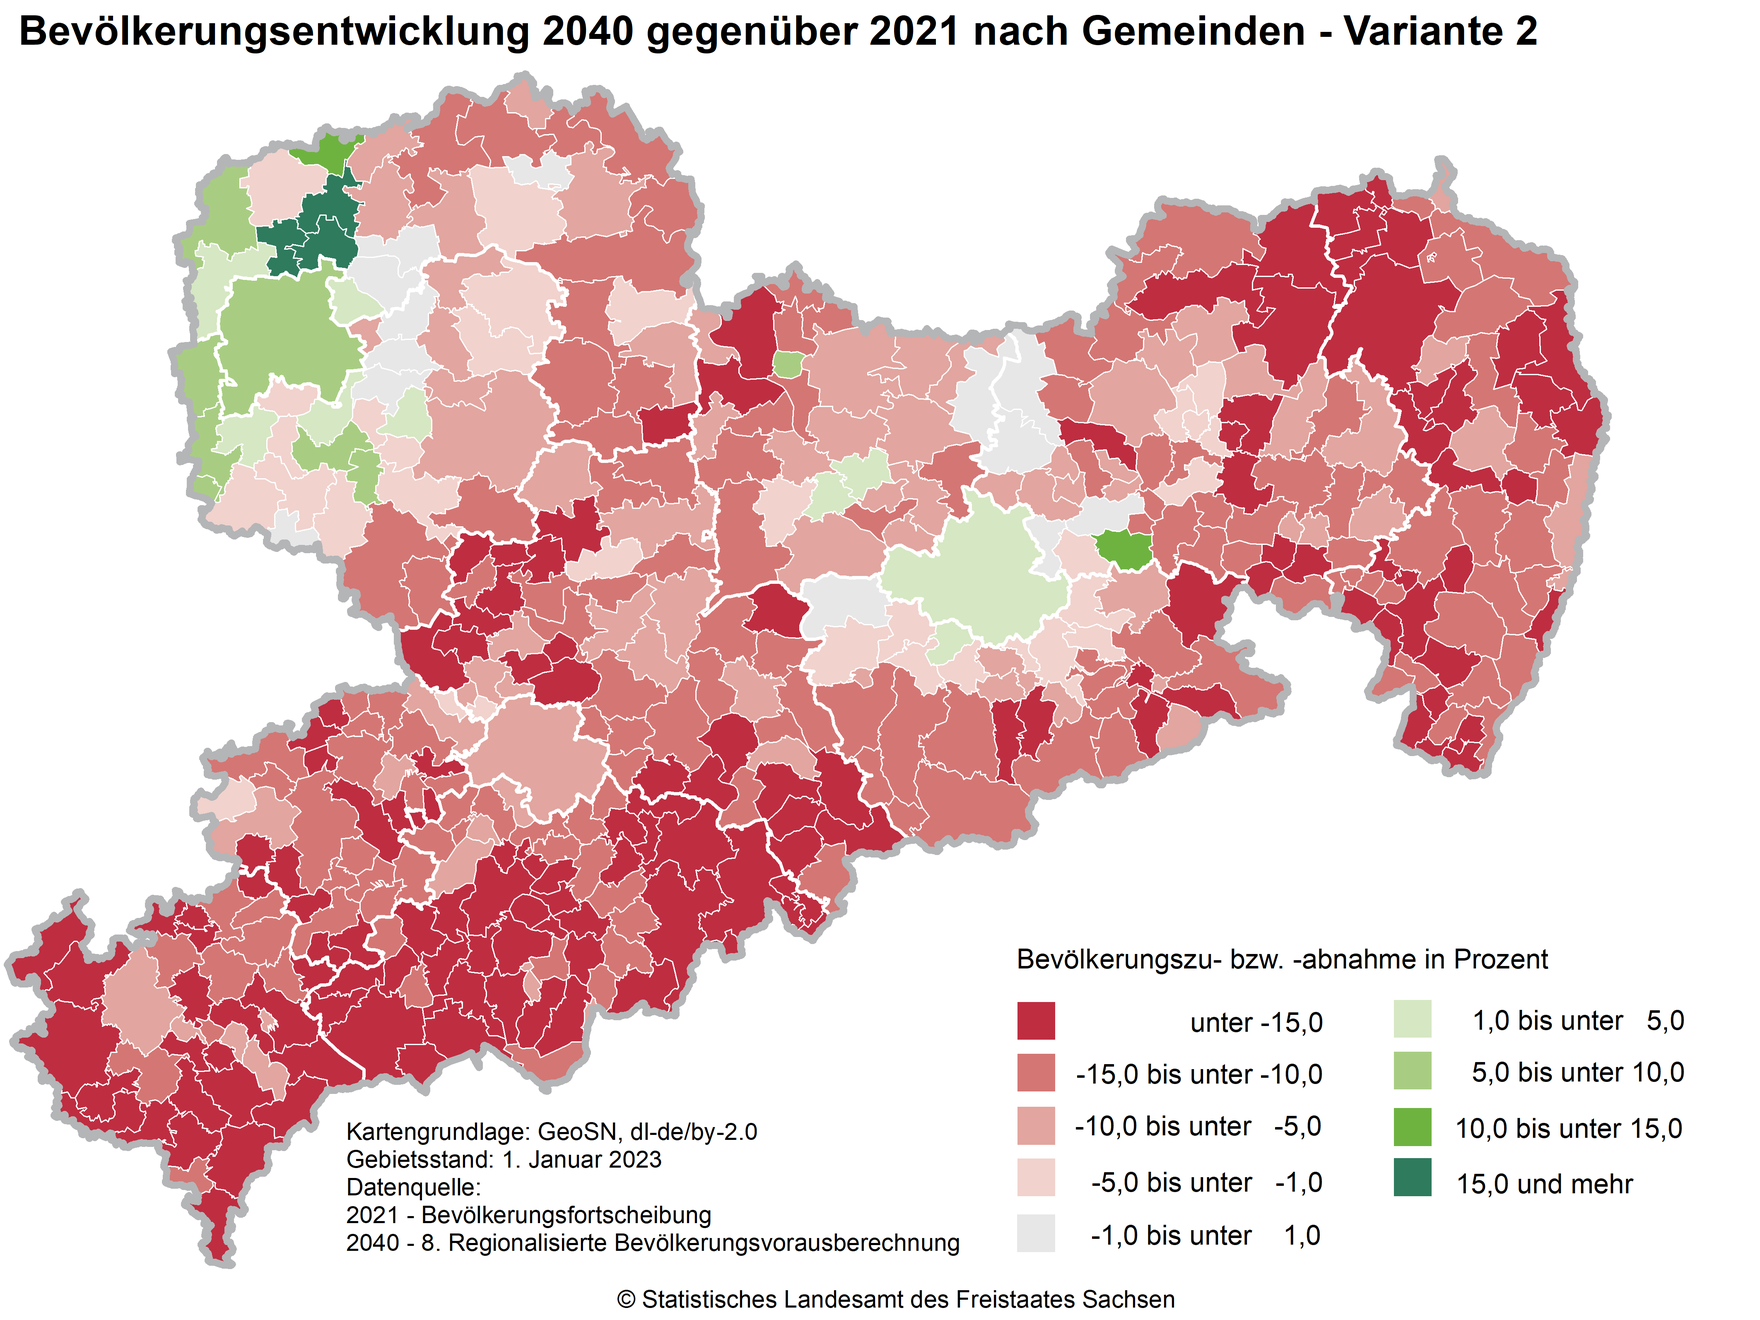 Die Karte zeigt die prozentuale Bevölkerungsentwicklung der Gemeinden in Sachsen von 2022 bis 2040 laut Variante 2 der 8. RBV. Für die Mehrzahl der sächsischen Gemeinden wird bis 2040 ein Bevölkerungsrückgang erwartet. 